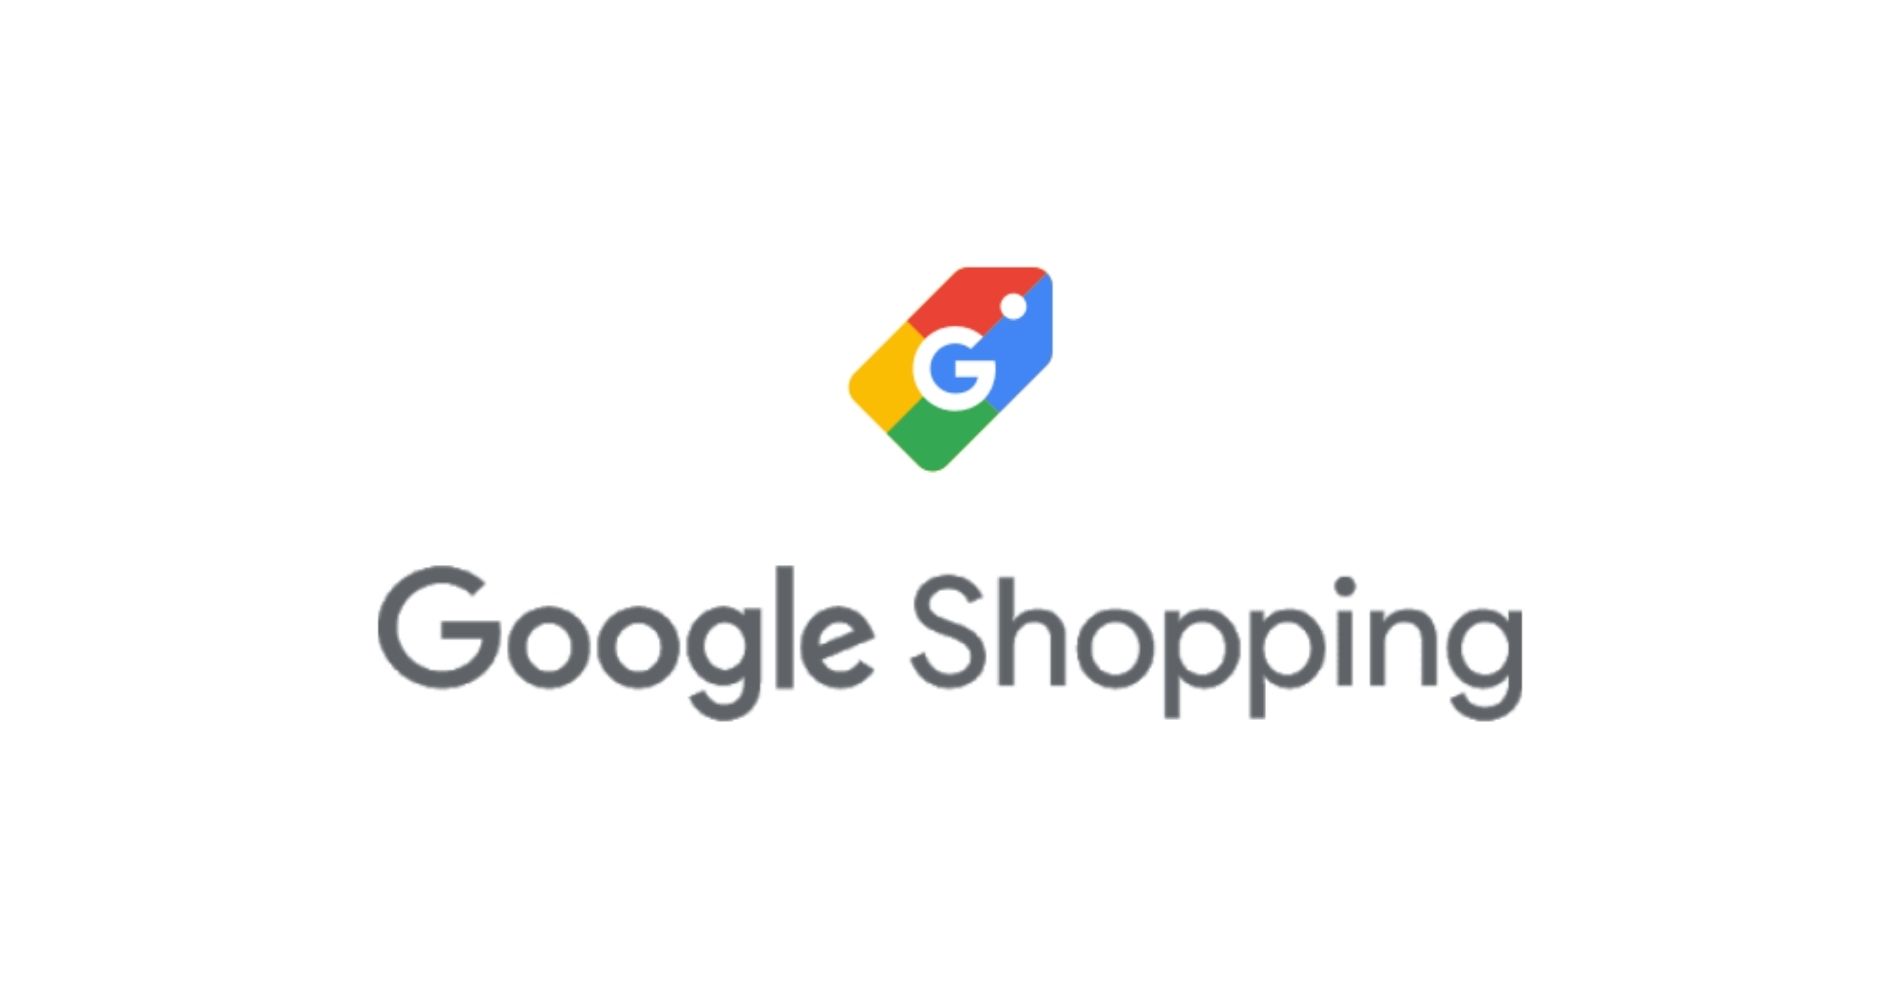 Google Shopping - Image: Google